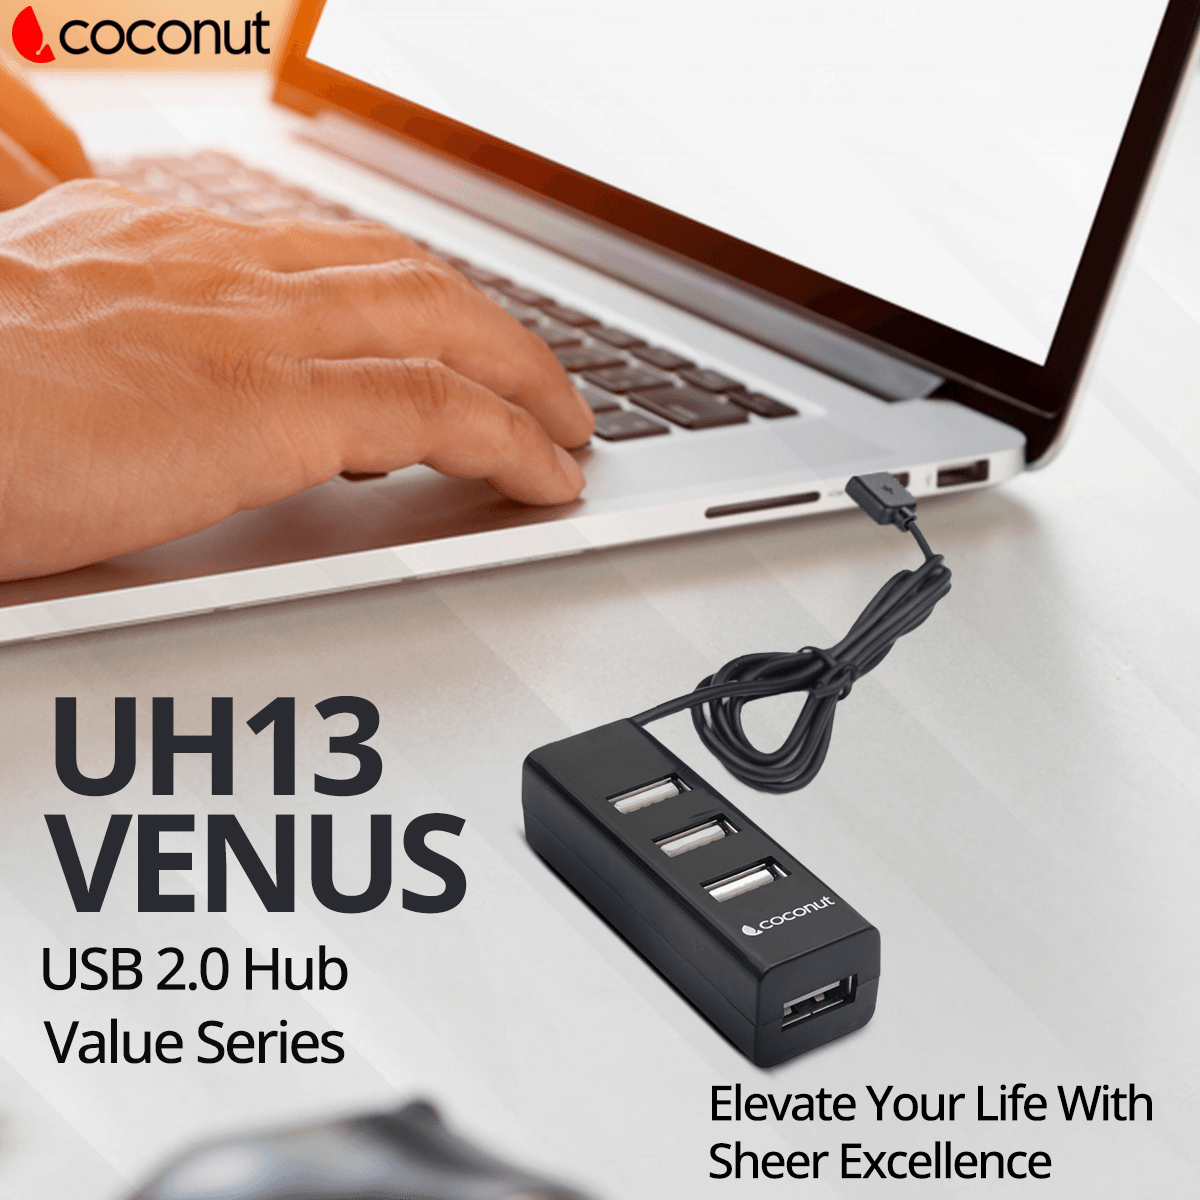 UH13 Venus 4 Port USB Hub